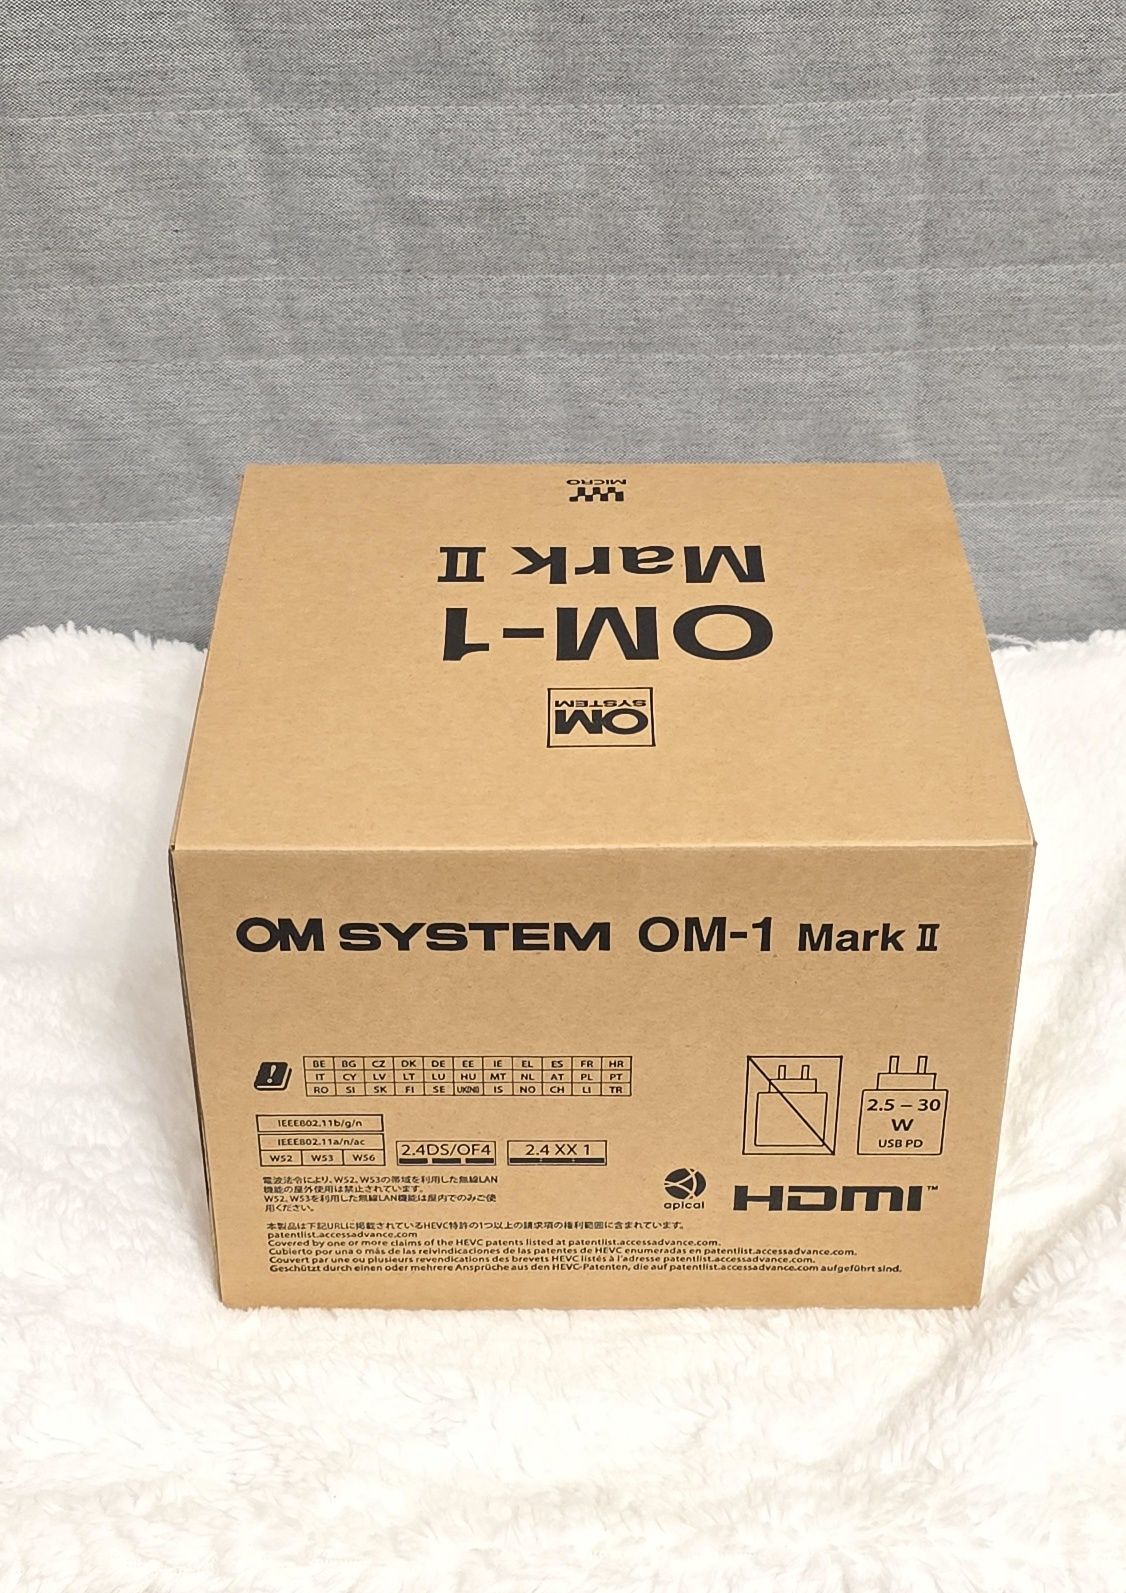 Olympus Om system OM-1 MARK II